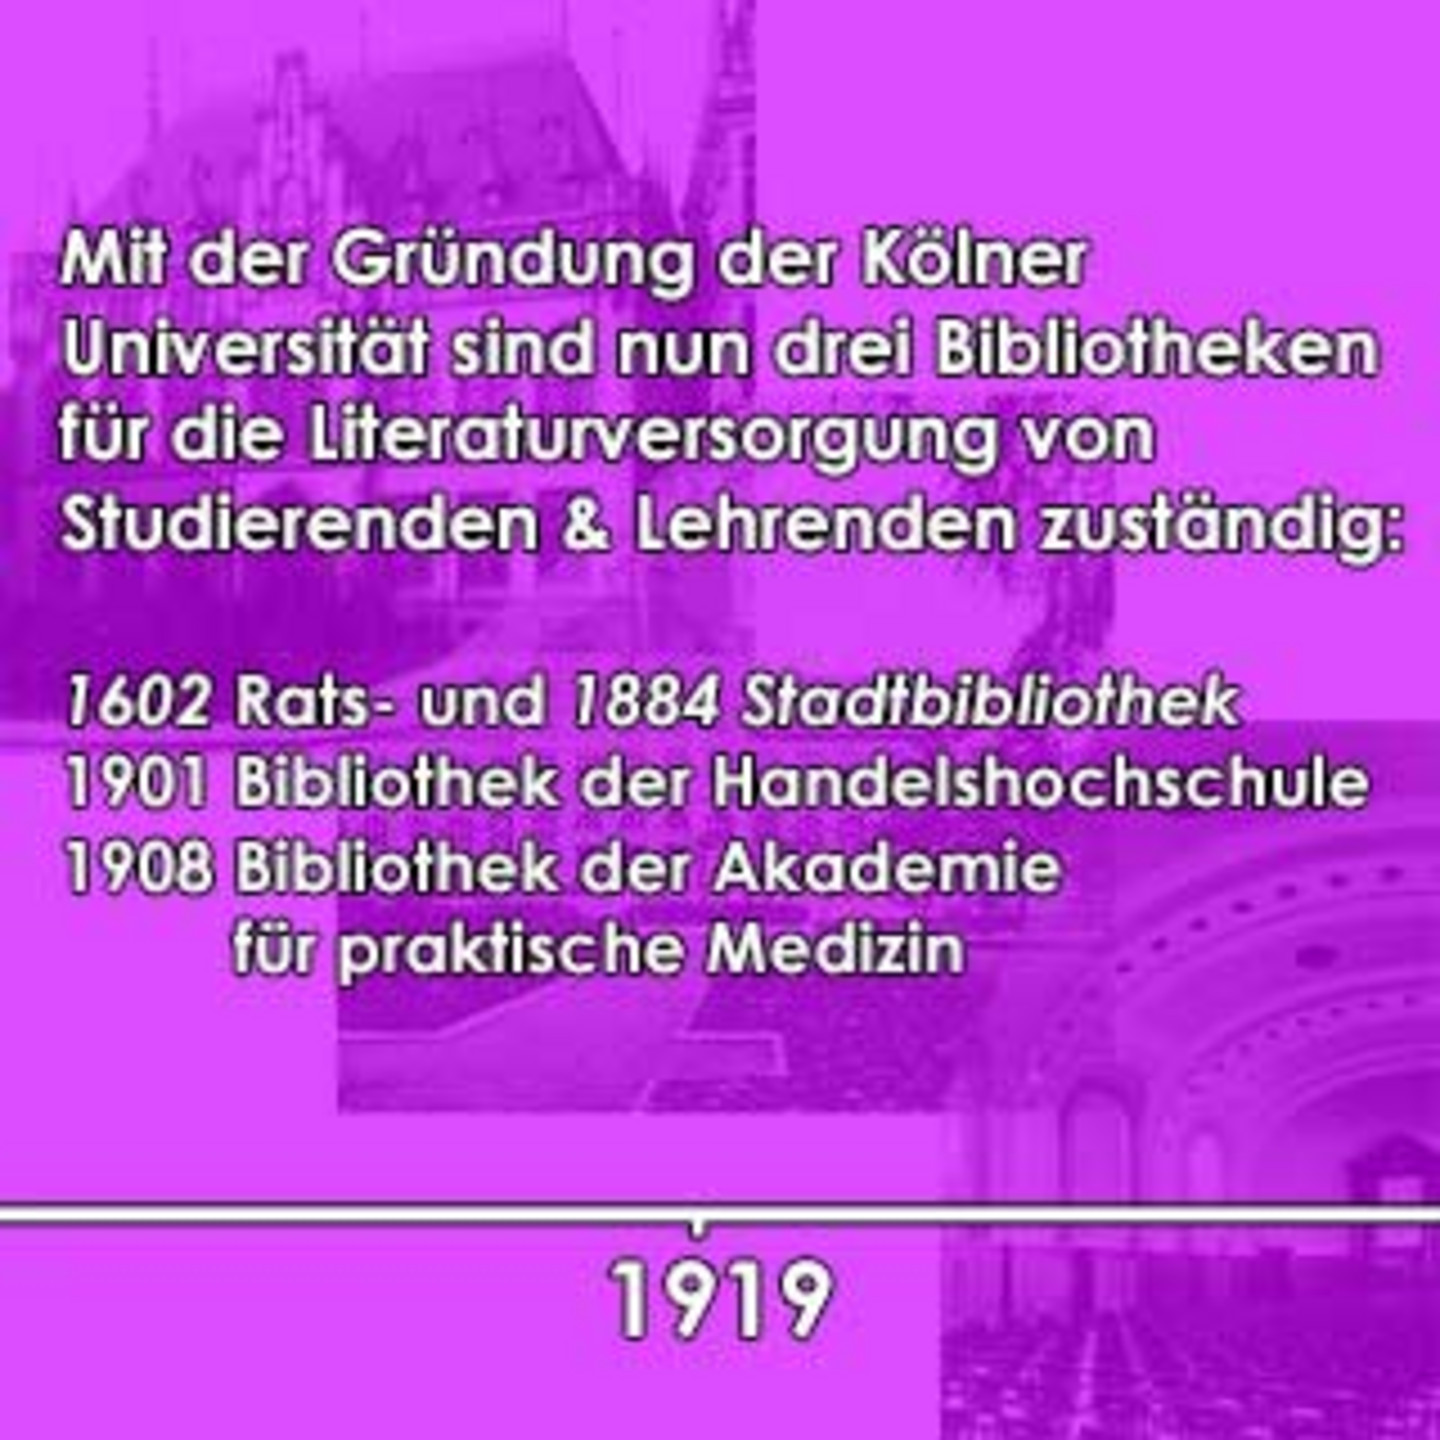 Ein lilanes Bild auf dem beschrieben ist, dass 1919 mit der Grüdnung der Kölner Universität drei Bibliotheken für die Literaturversorgung zuständig waren.